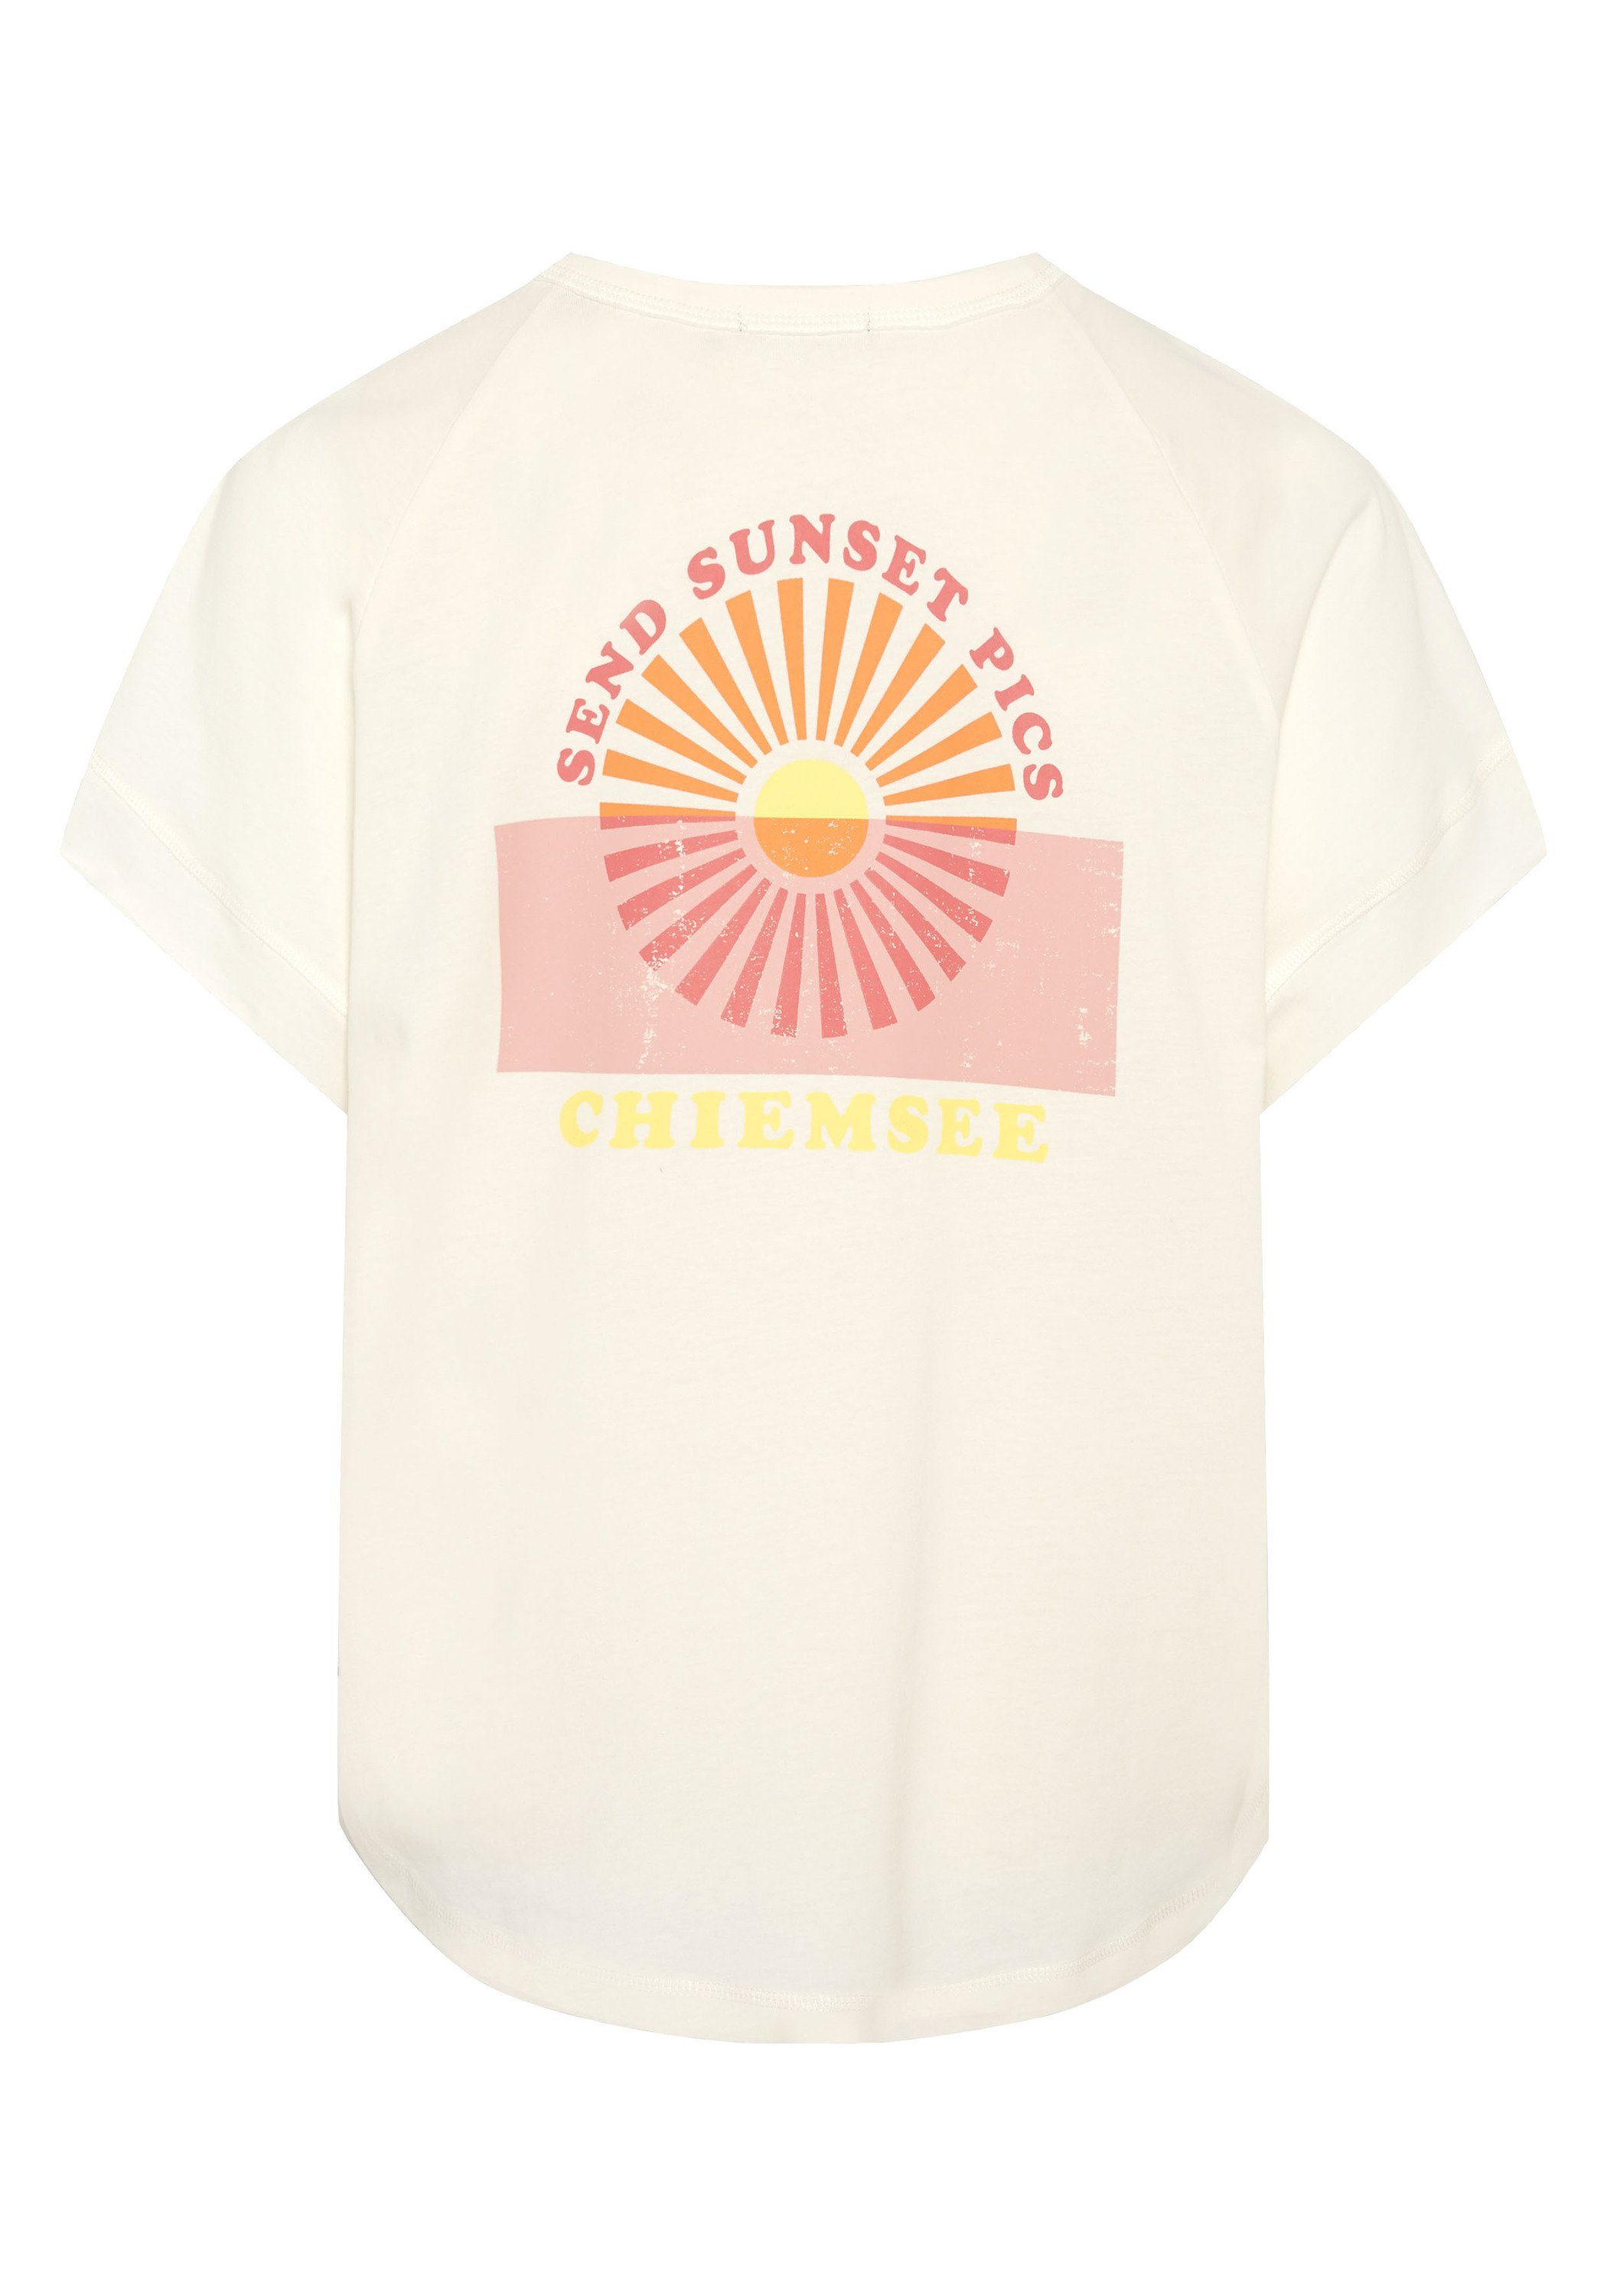 Shirt 11-4202 Star Chiemsee Vintage-Optik White in Print-Shirt 1